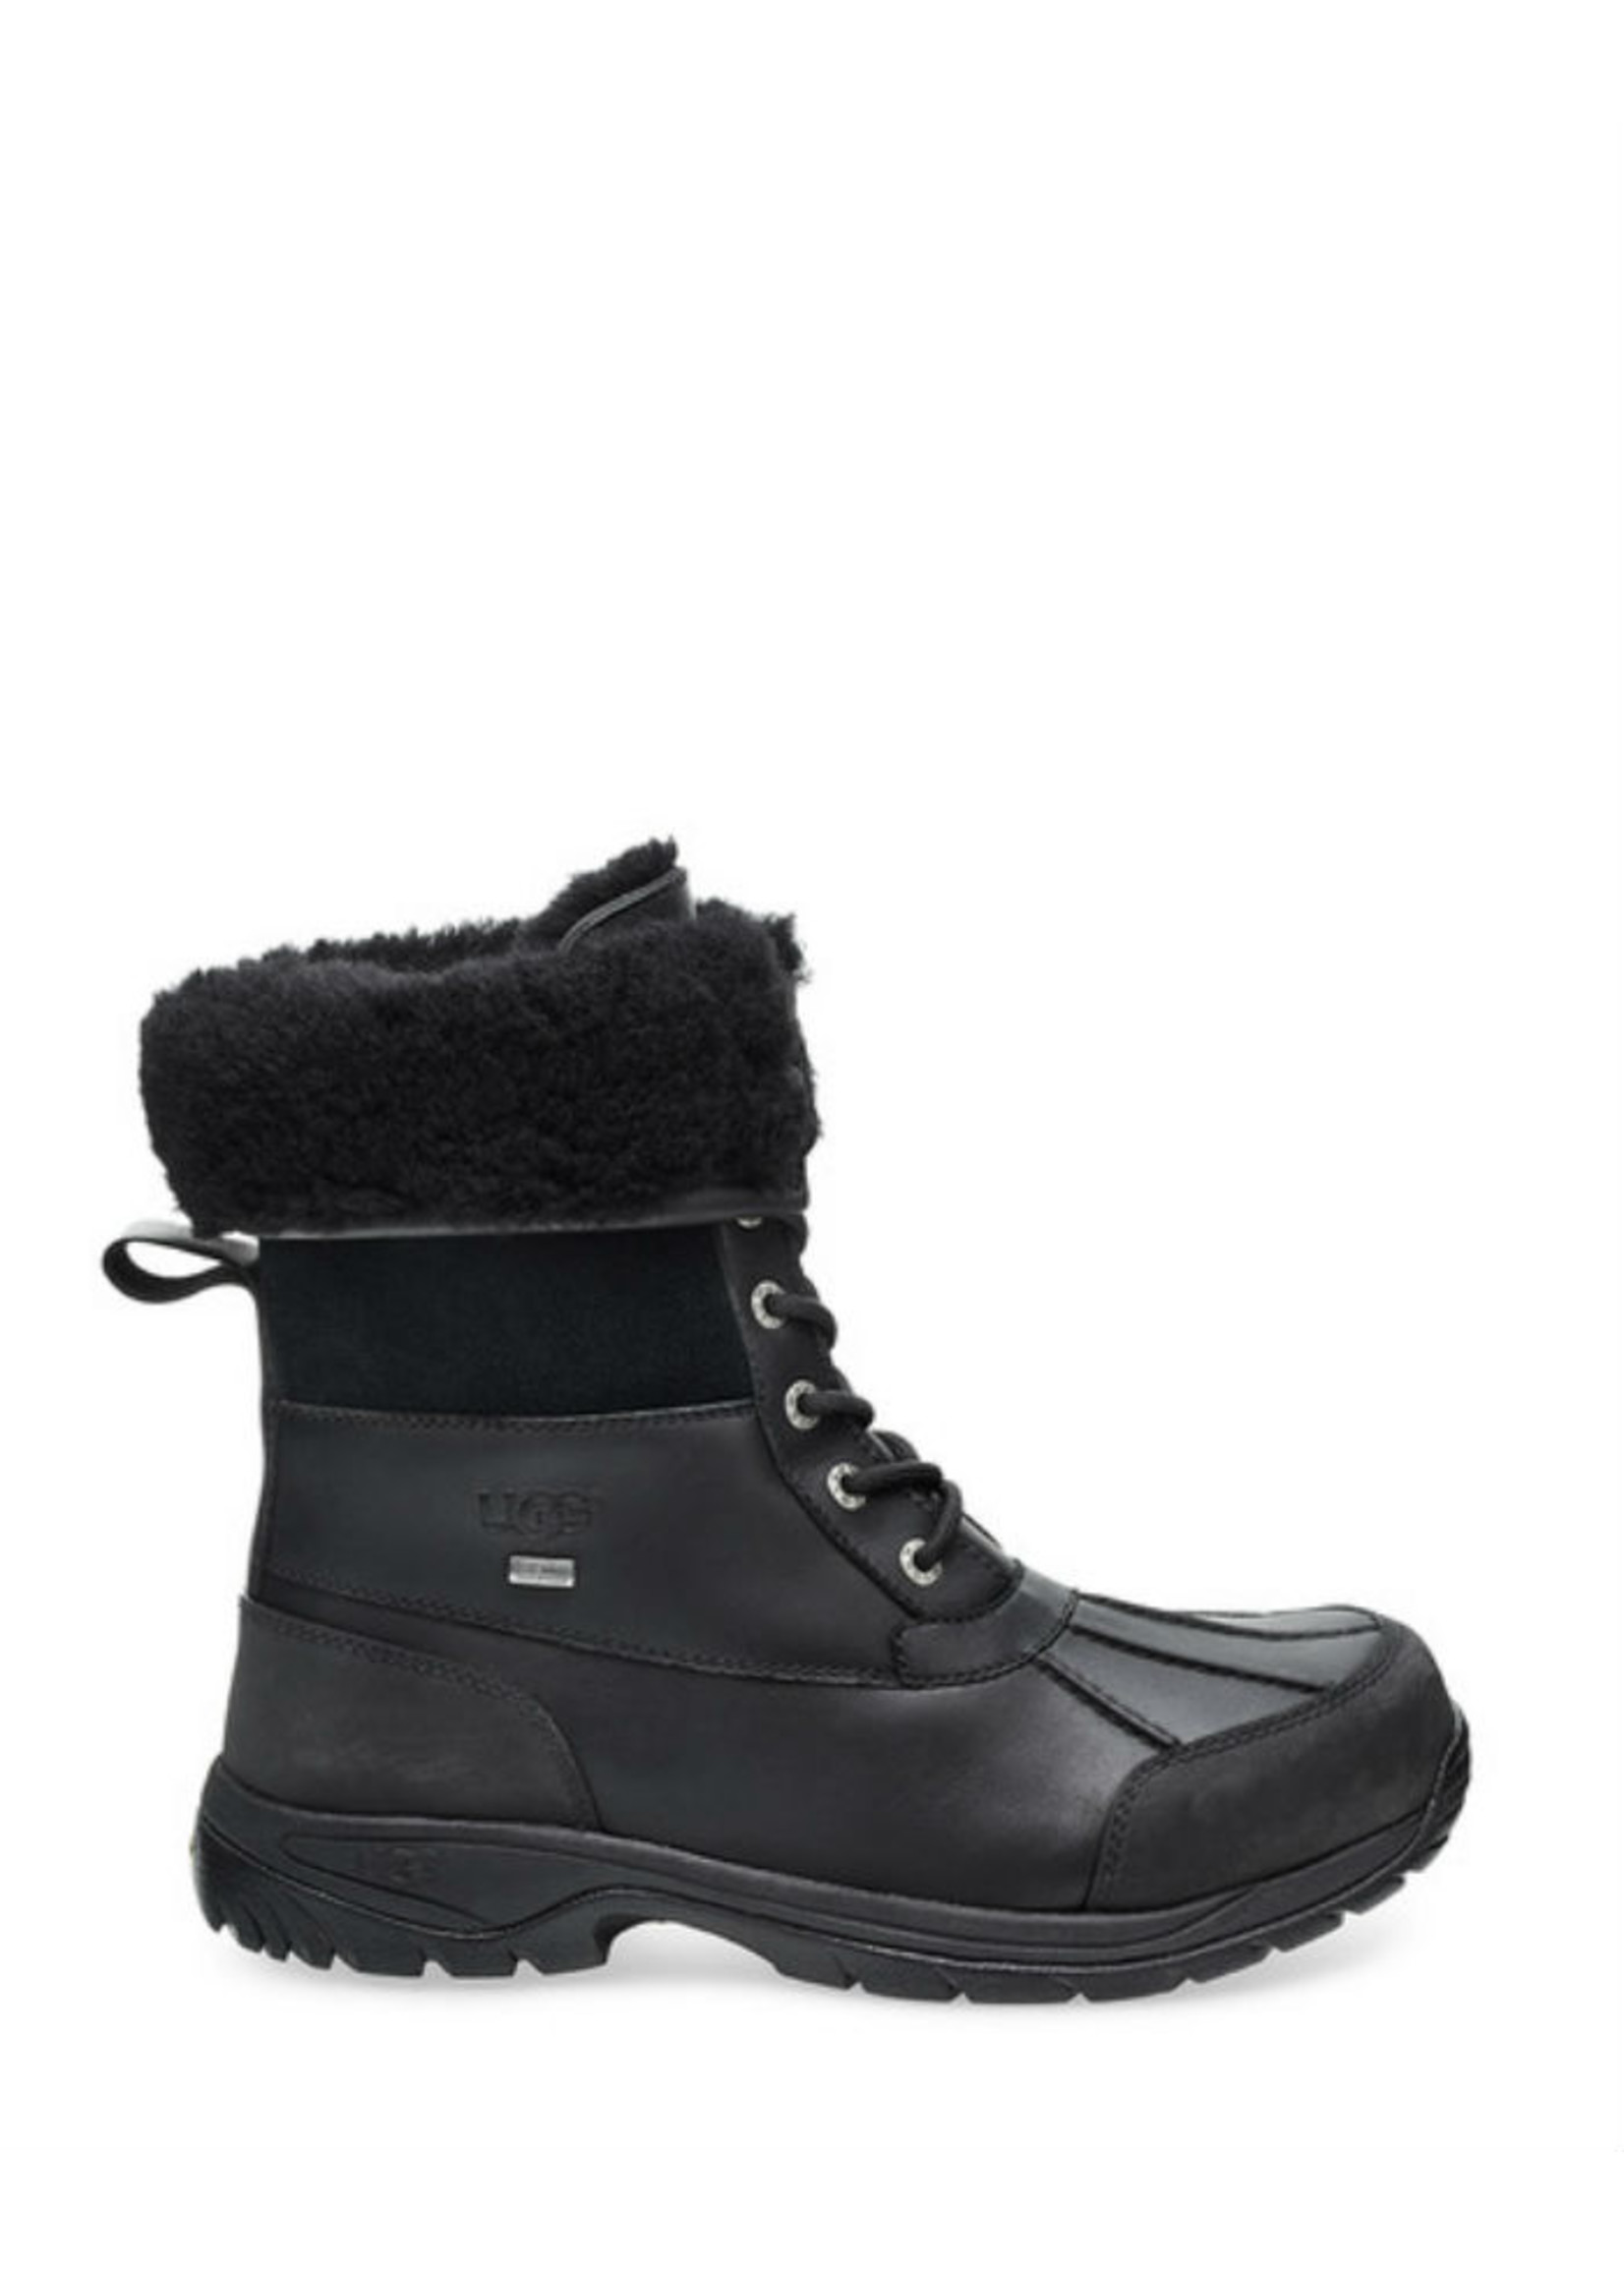 UGG Men's BUTTE Fur Winter Boots